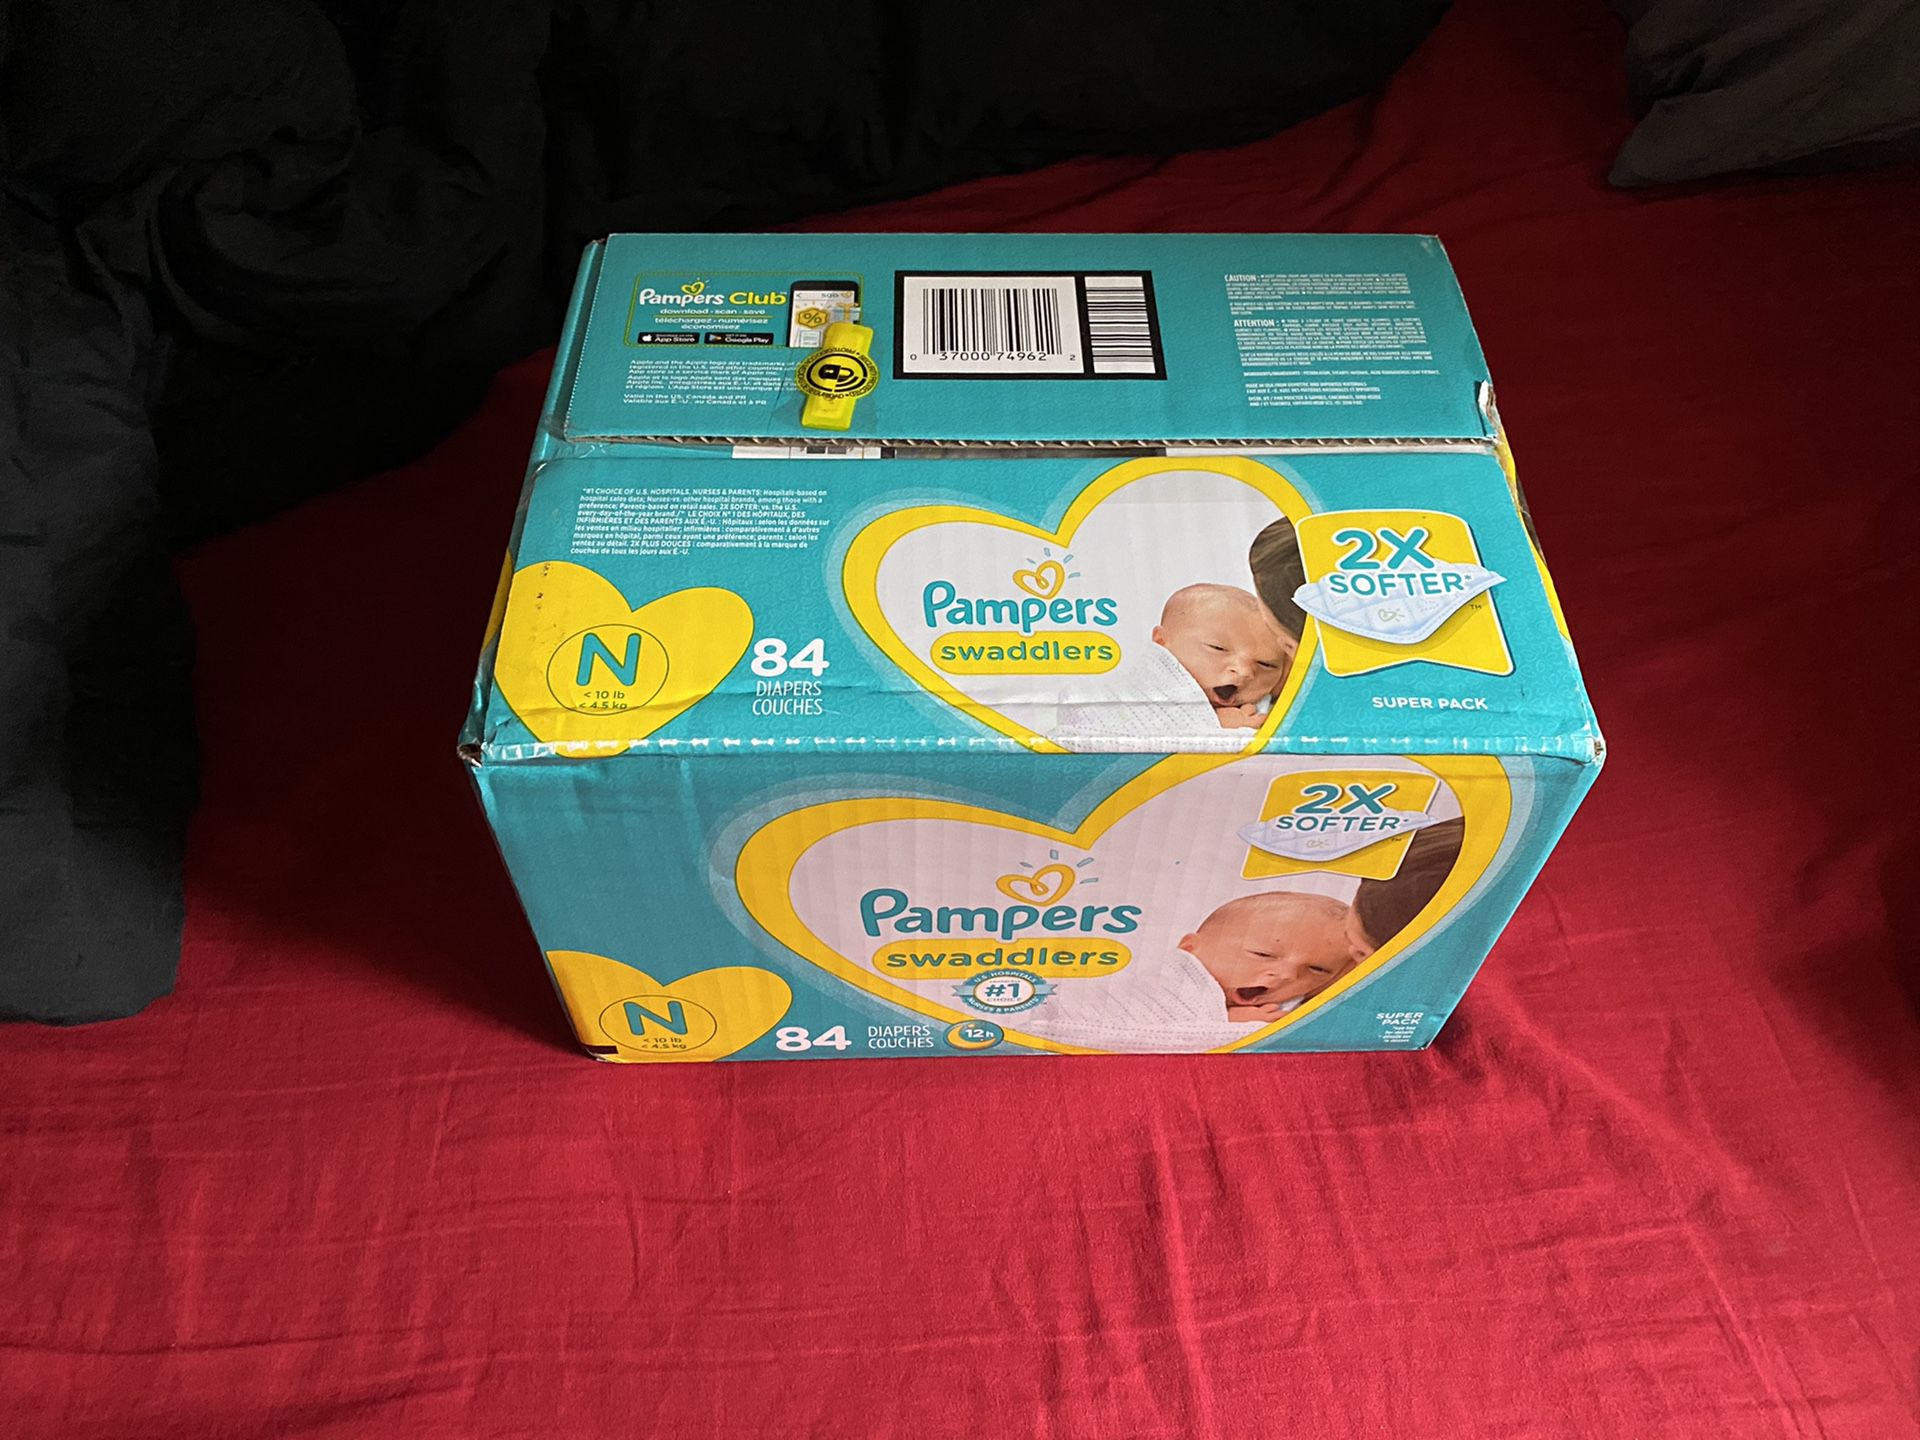 Brand new box of Newborn Pampers